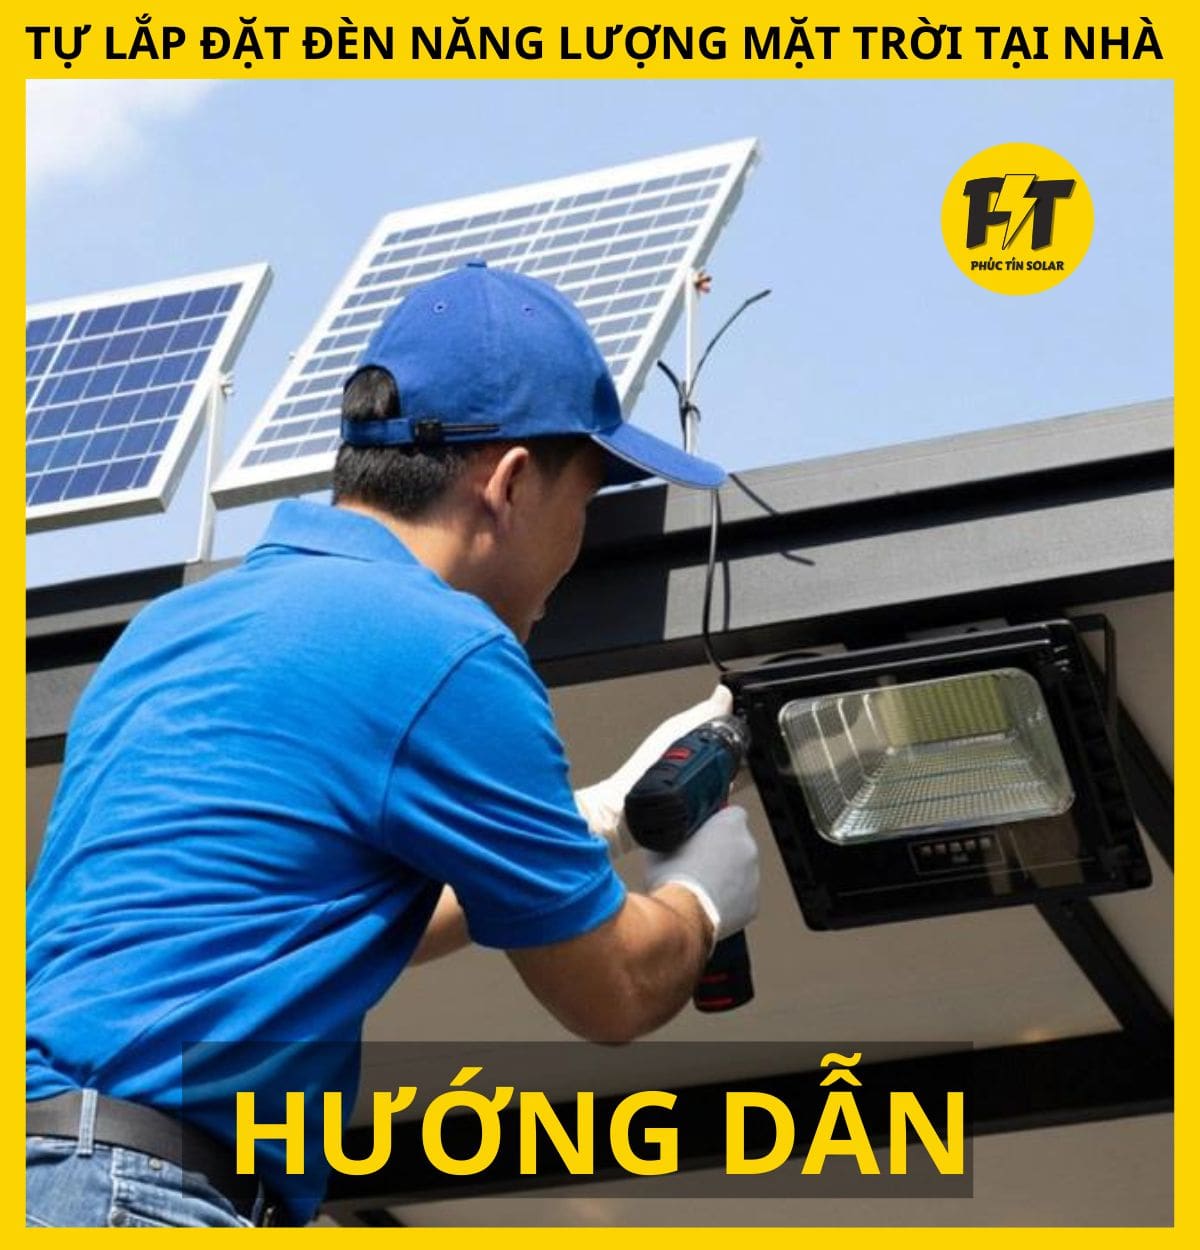 Hướng dẫn tự lắp đặt đèn năng lượng mặt trời tại nhà